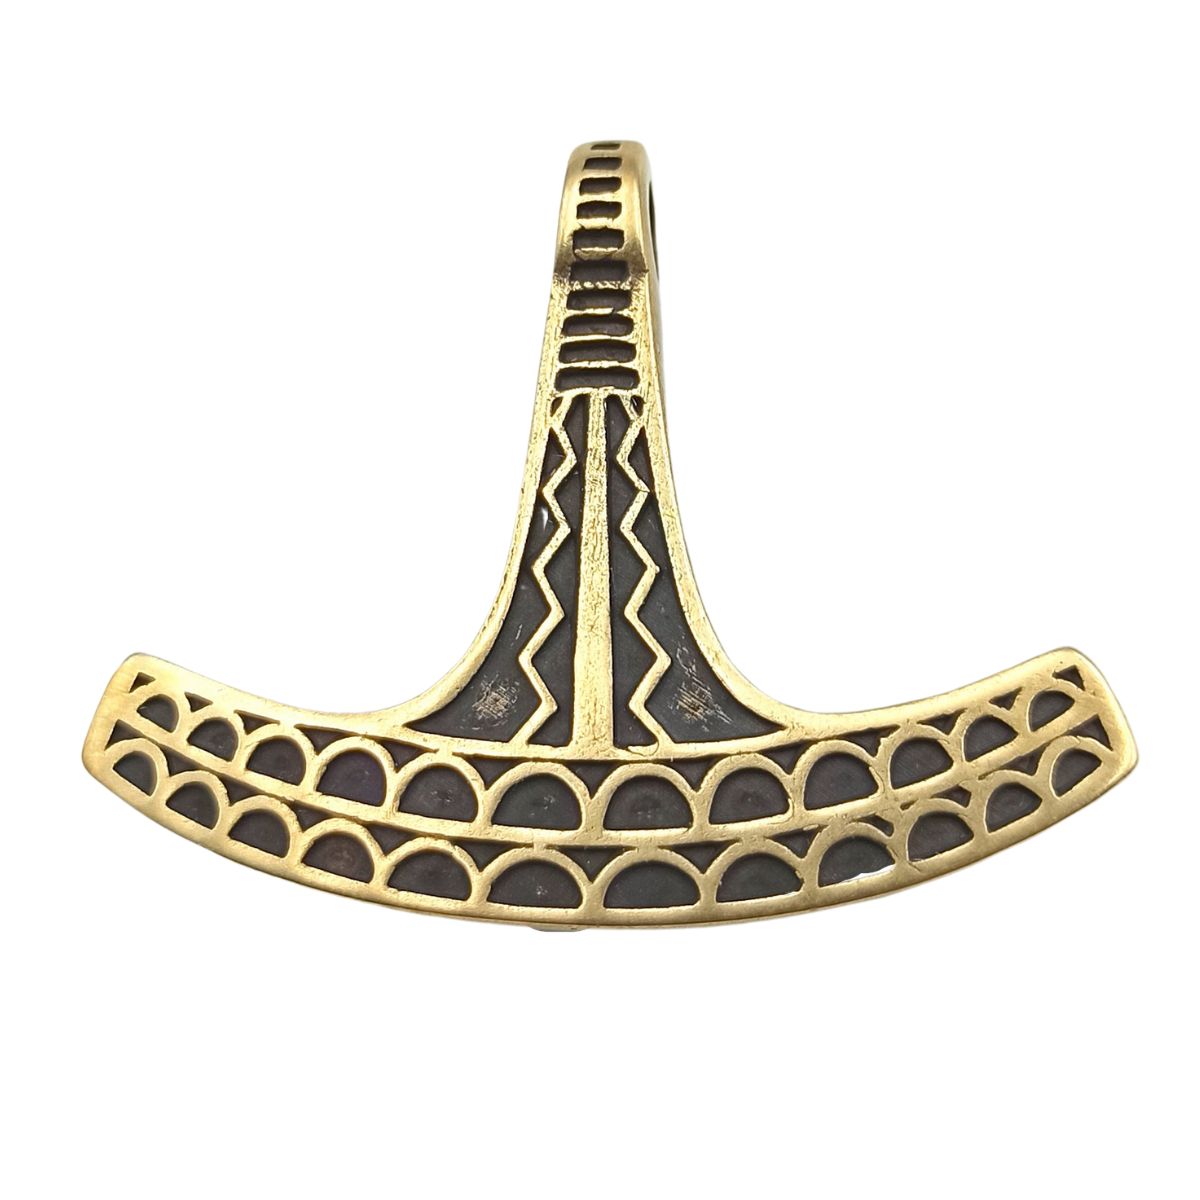 Ukko Mjolnir replica pendant from Bronze